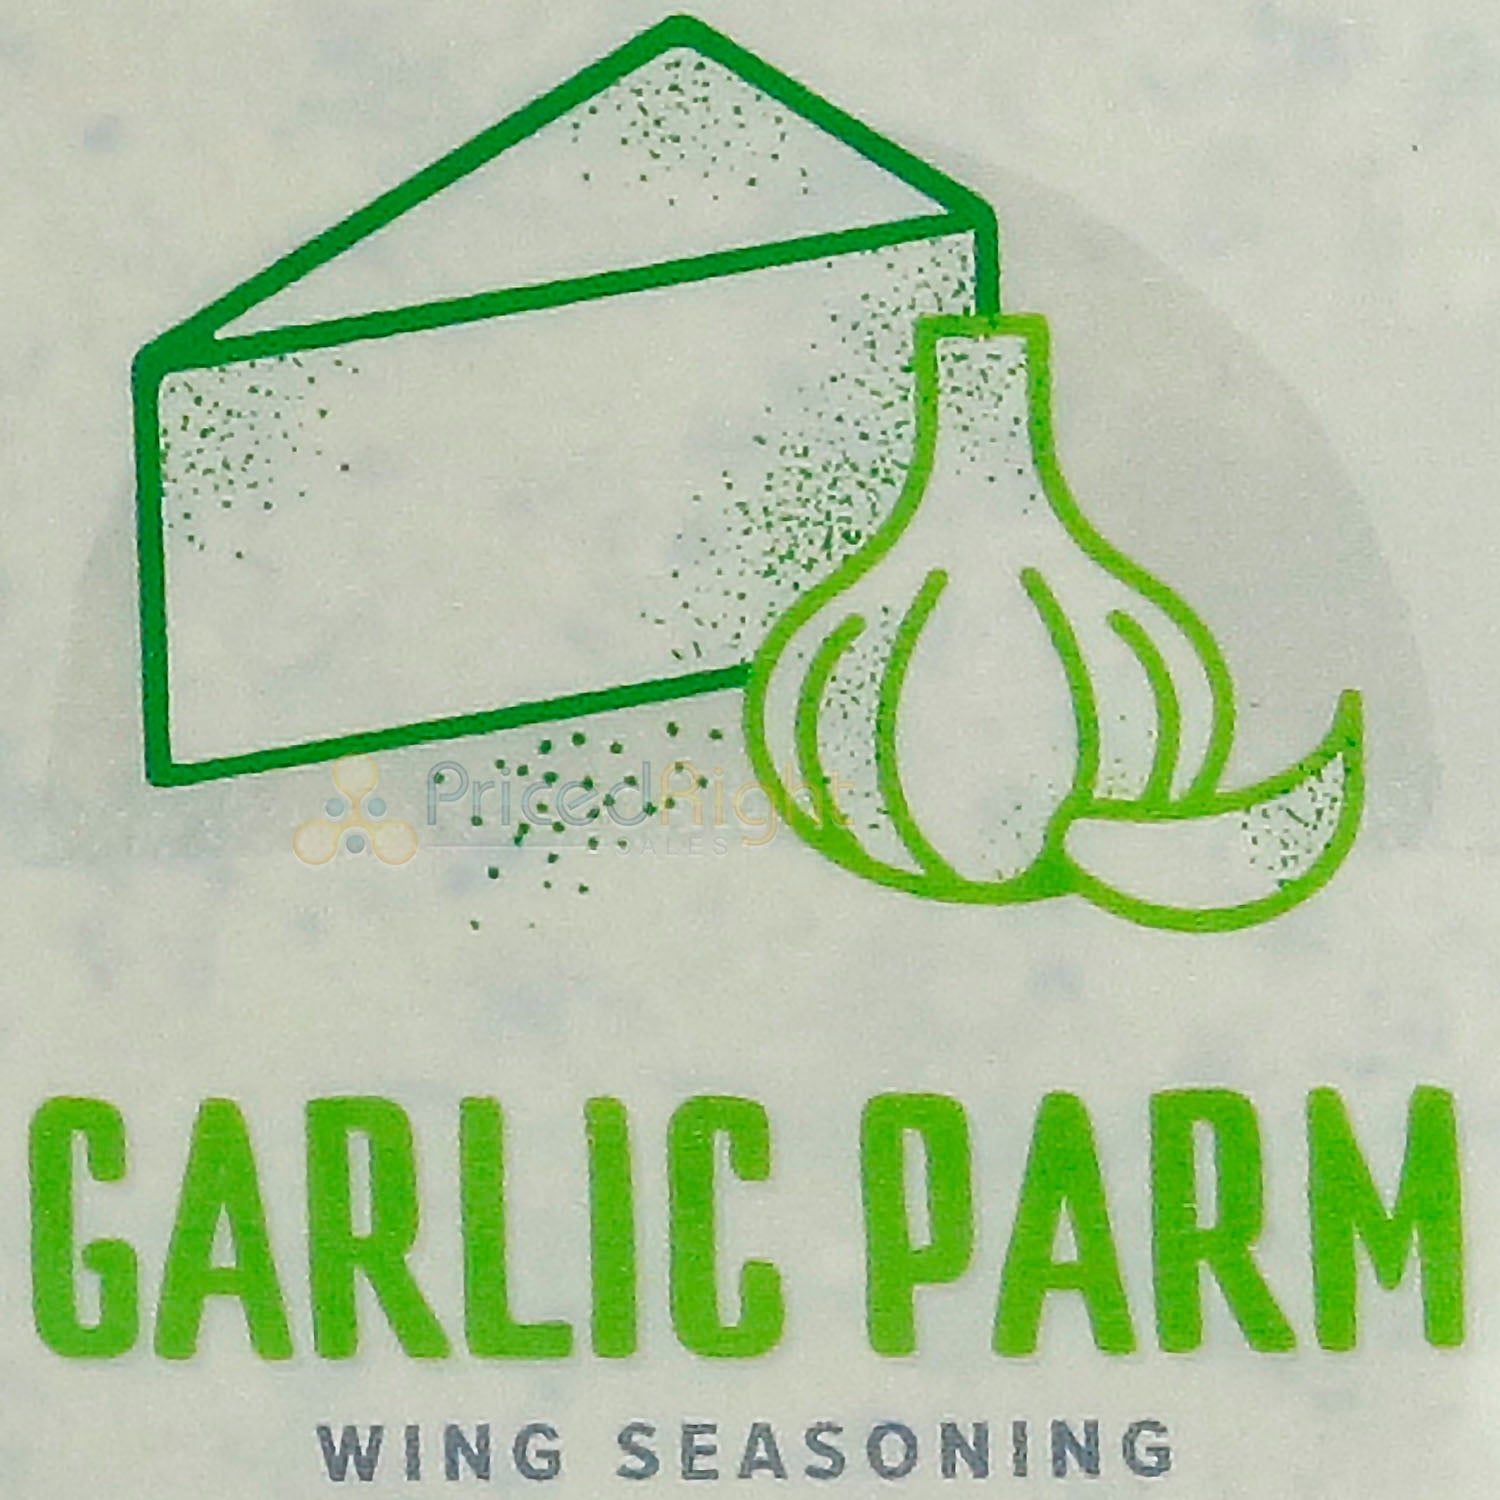 Kosmos Q Wing Dust Garlic Parm Wing Seasoning 5 oz